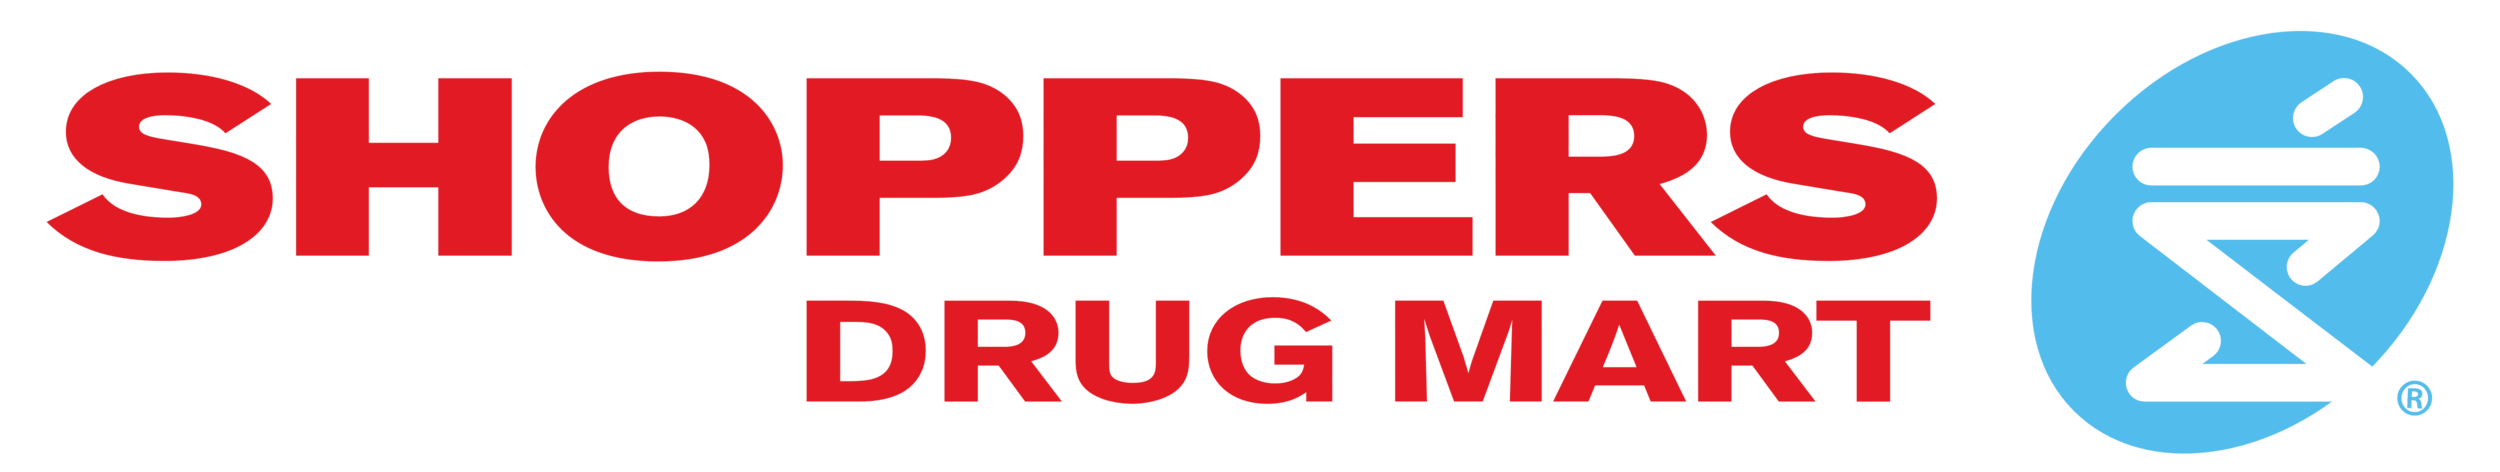 Shoppers_Drug_Mart_logo.png